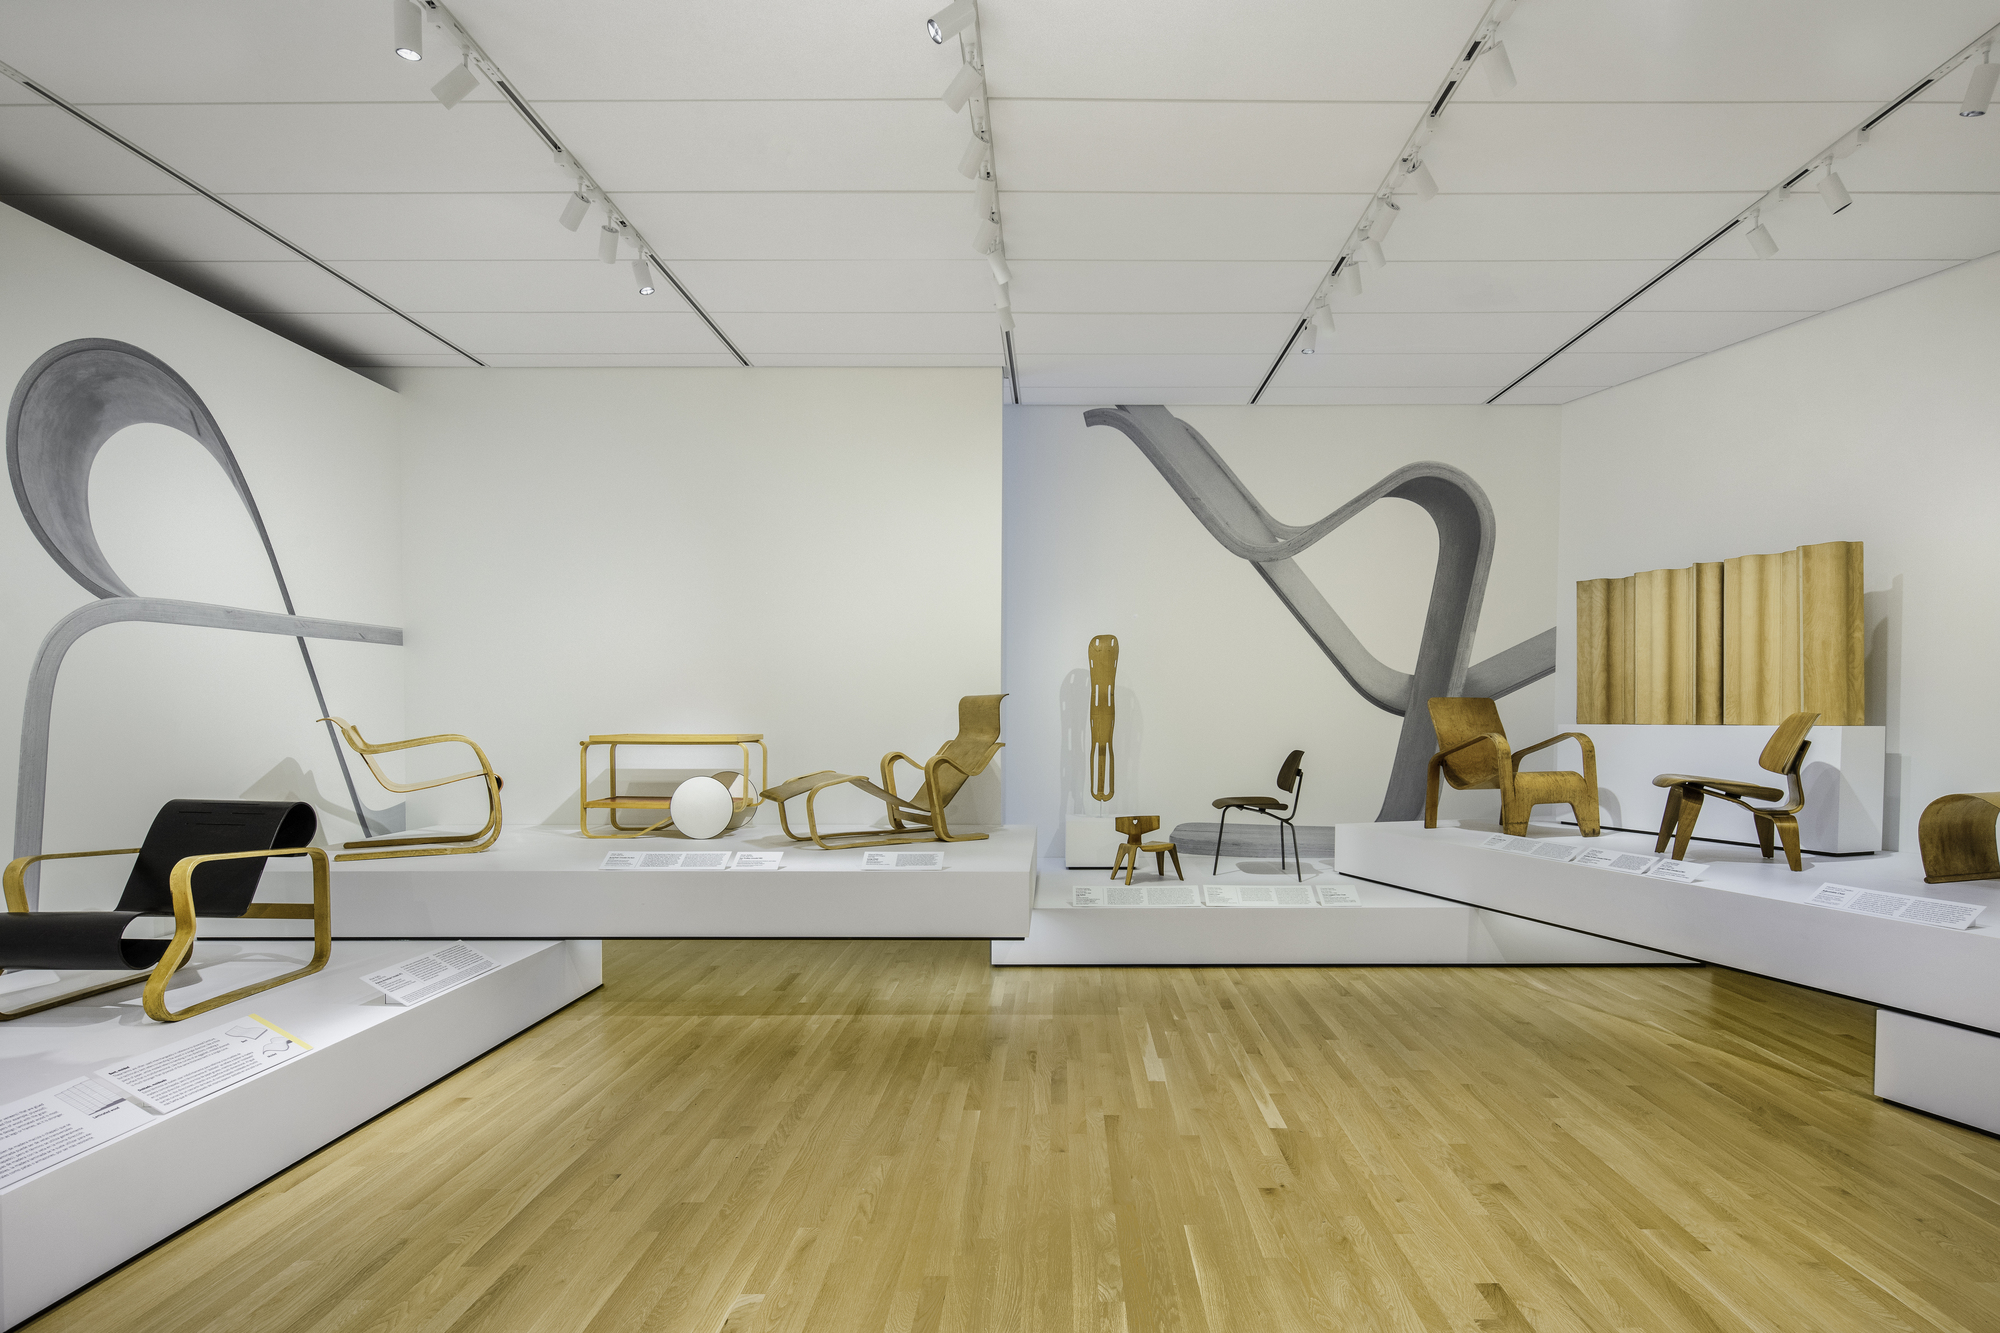 图片[3]|丹佛艺术博物馆设计画廊与工作室 / OMA|ART-Arrakis | 建筑室内设计的创新与灵感